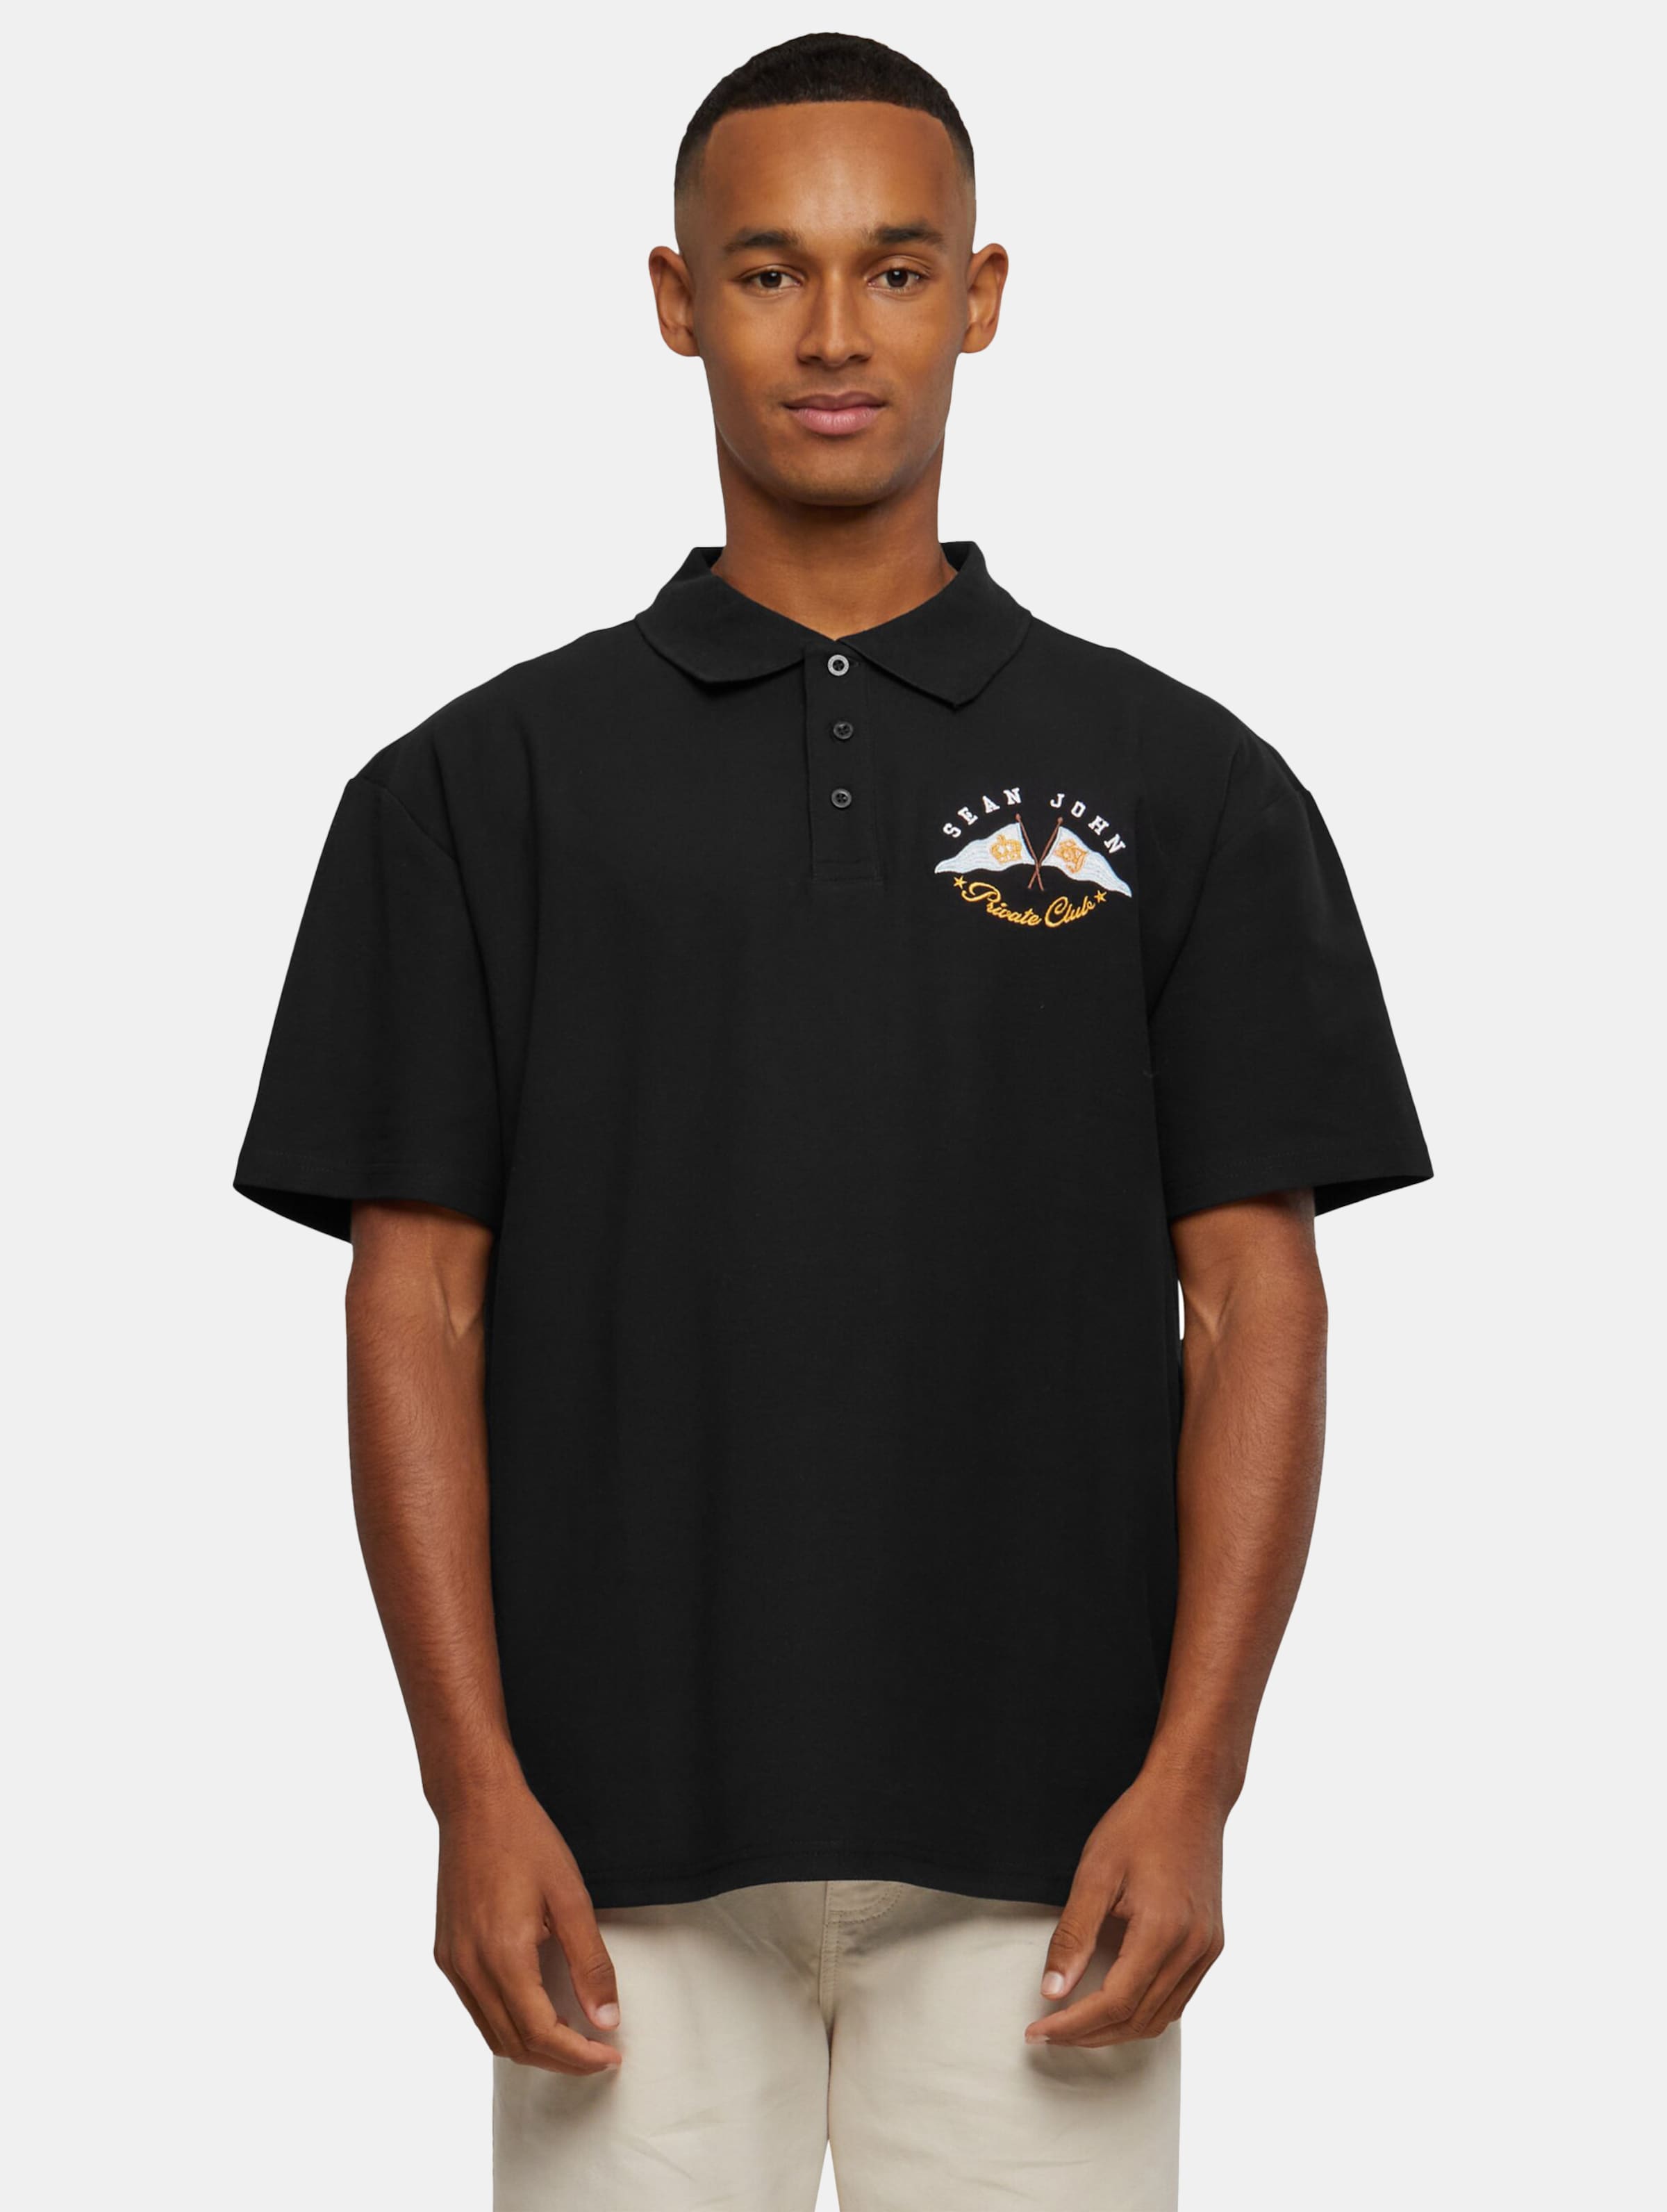 Sean John JM232-020-01 SJ Yacht Club Polo Shirt Männer,Unisex op kleur zwart, Maat S